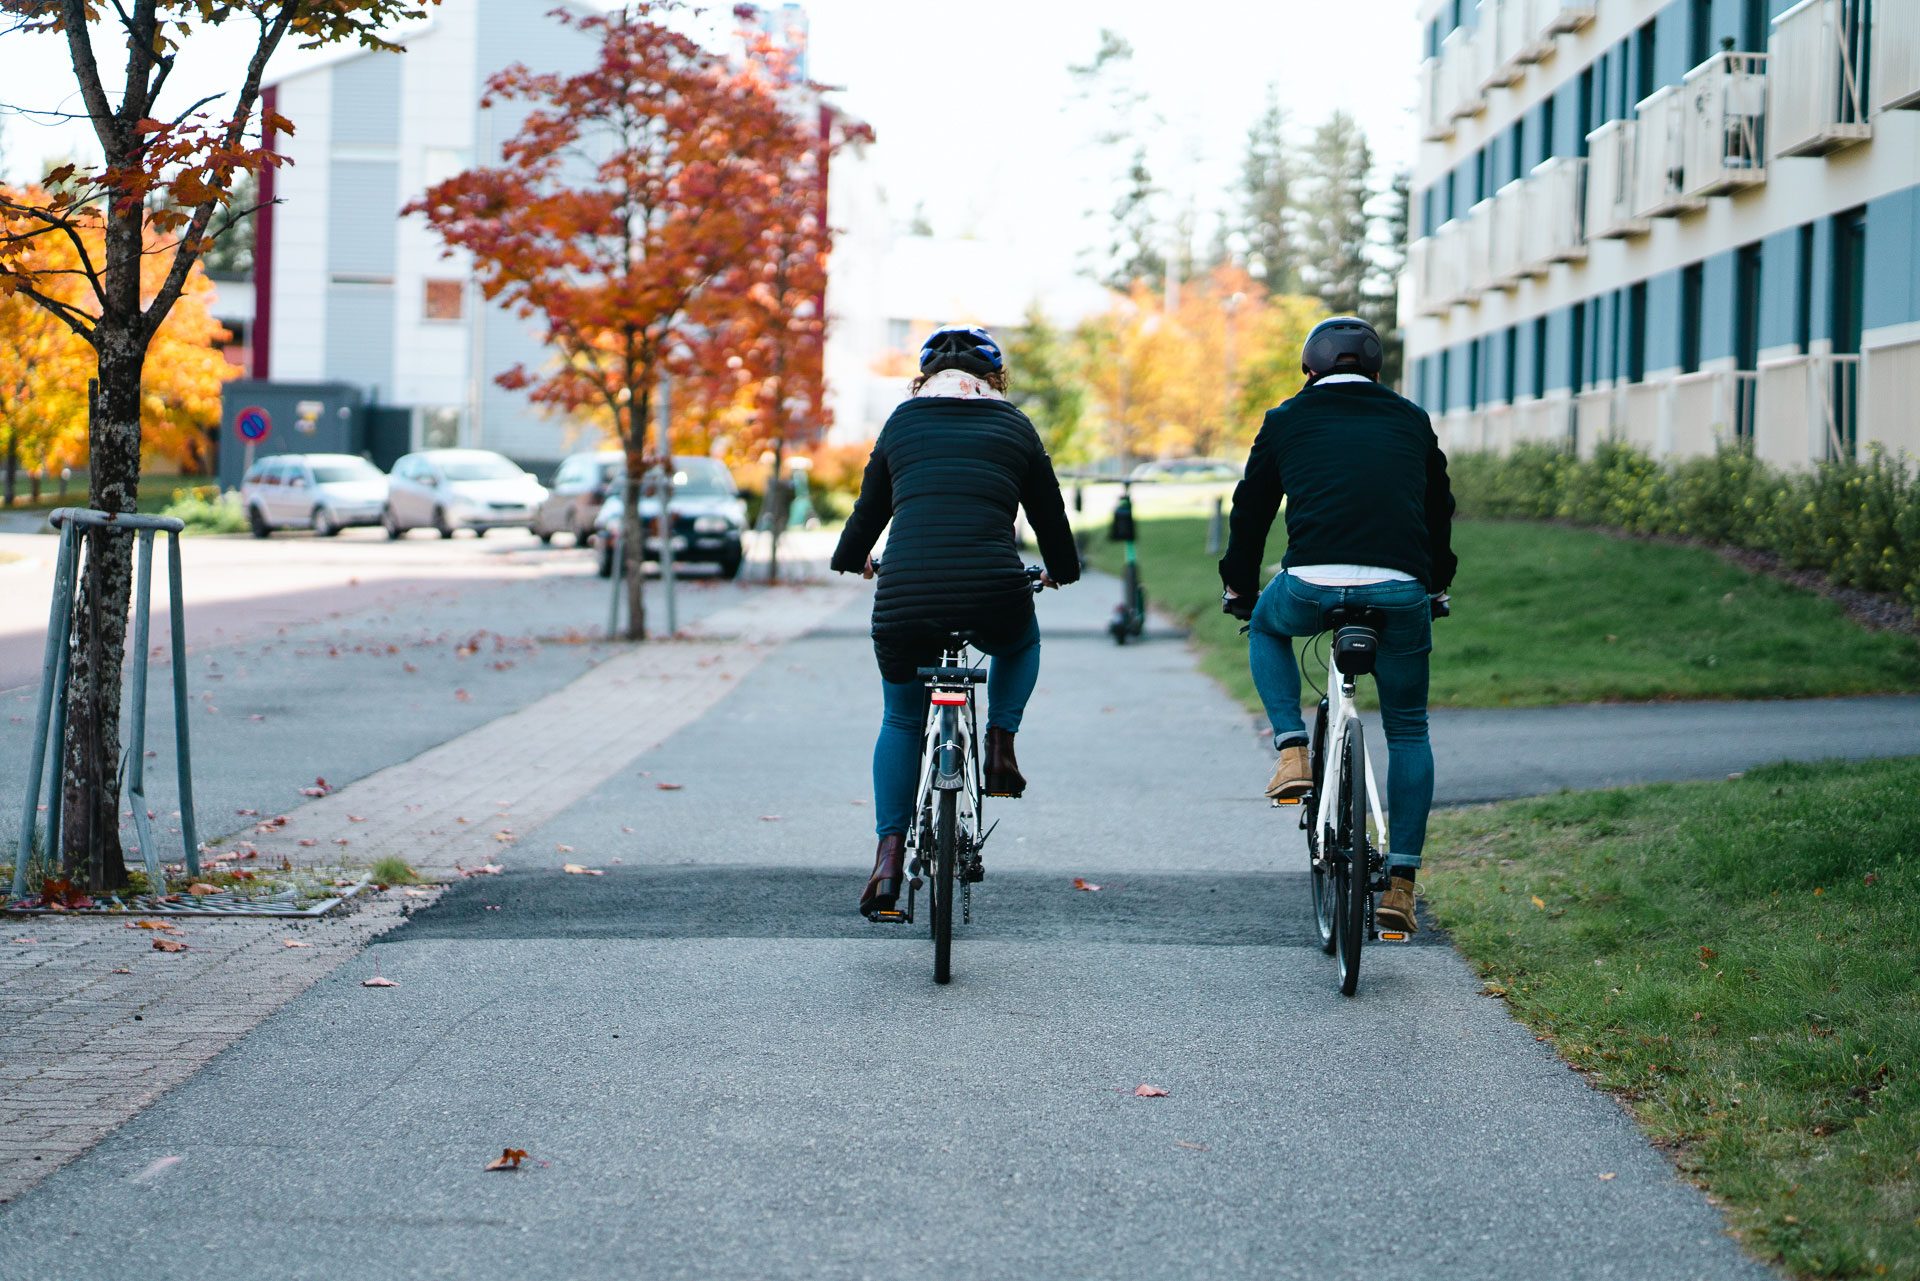 Kuvassa kaksi henkilöä ajaa polkupyörillä pois päin kamerasta kaupunkimaisemassa.